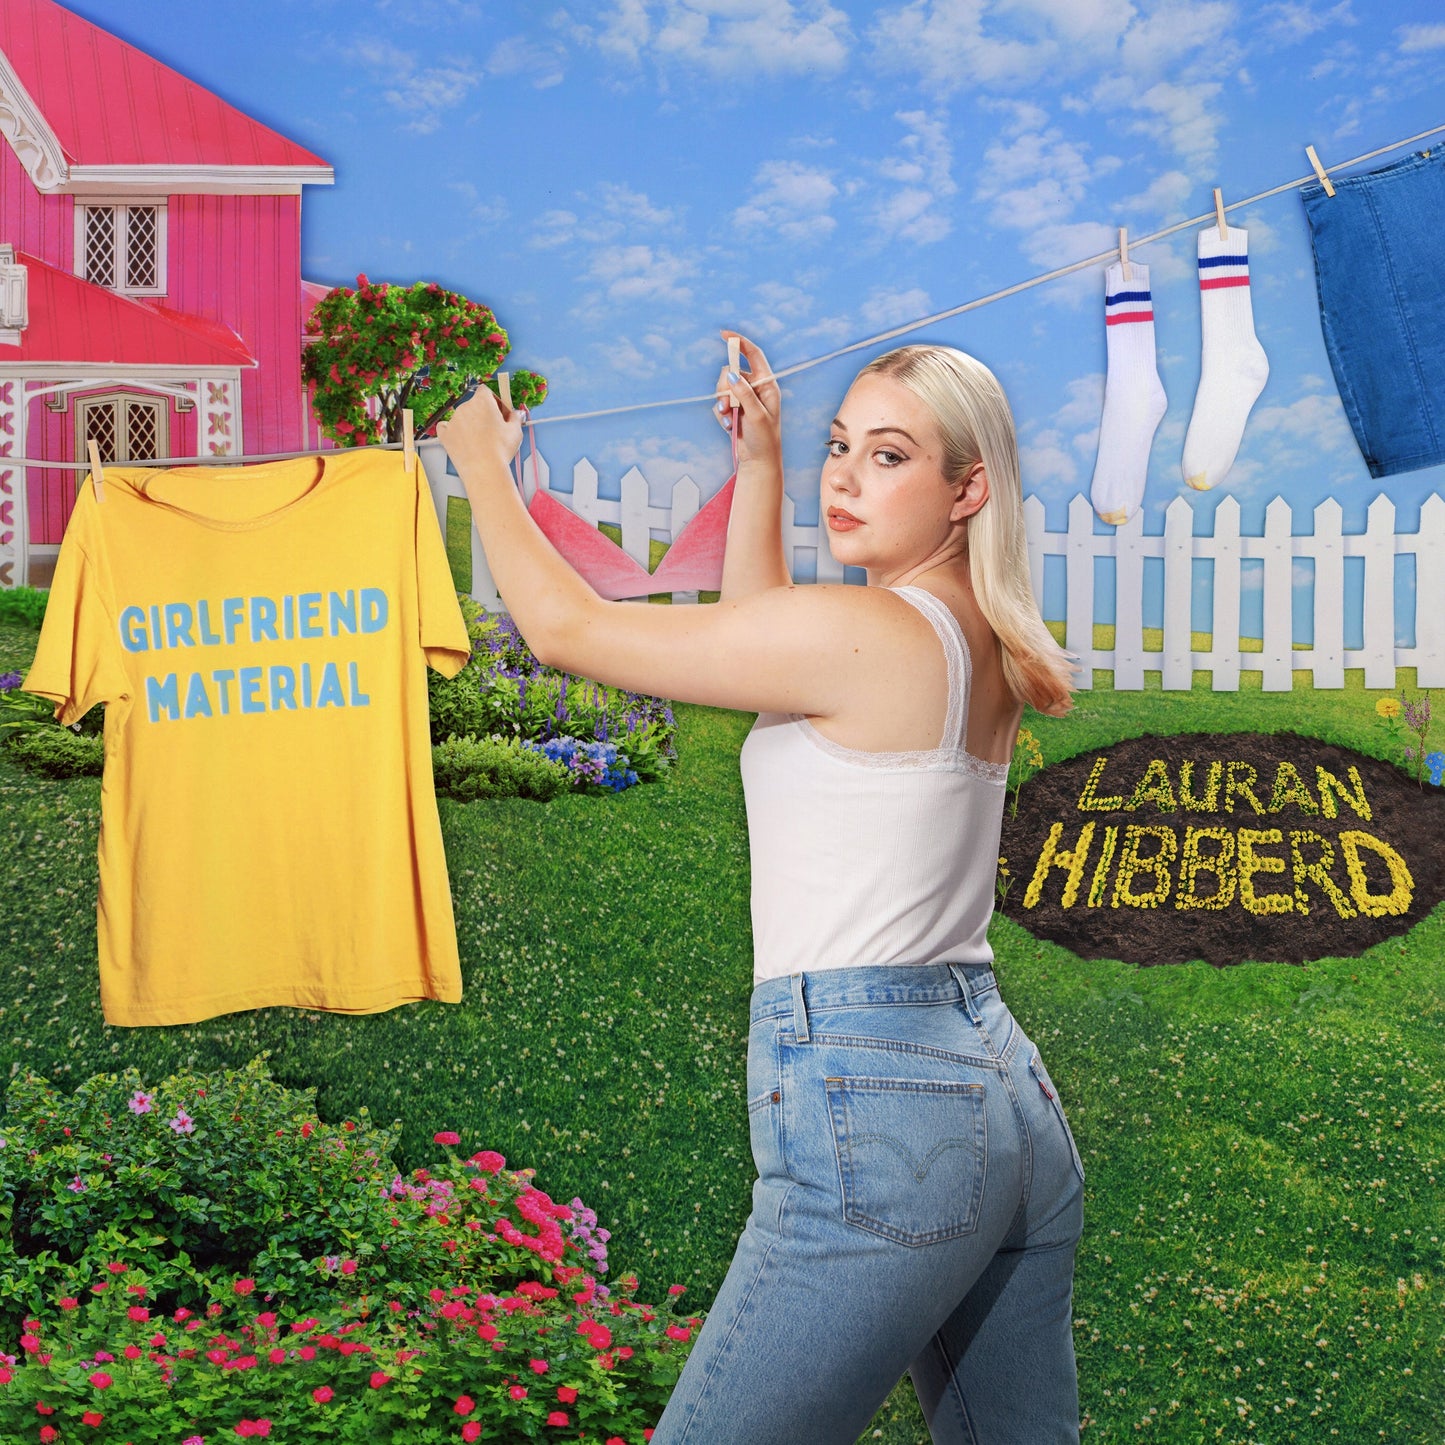 Lauran Hibberd – girlfriend material